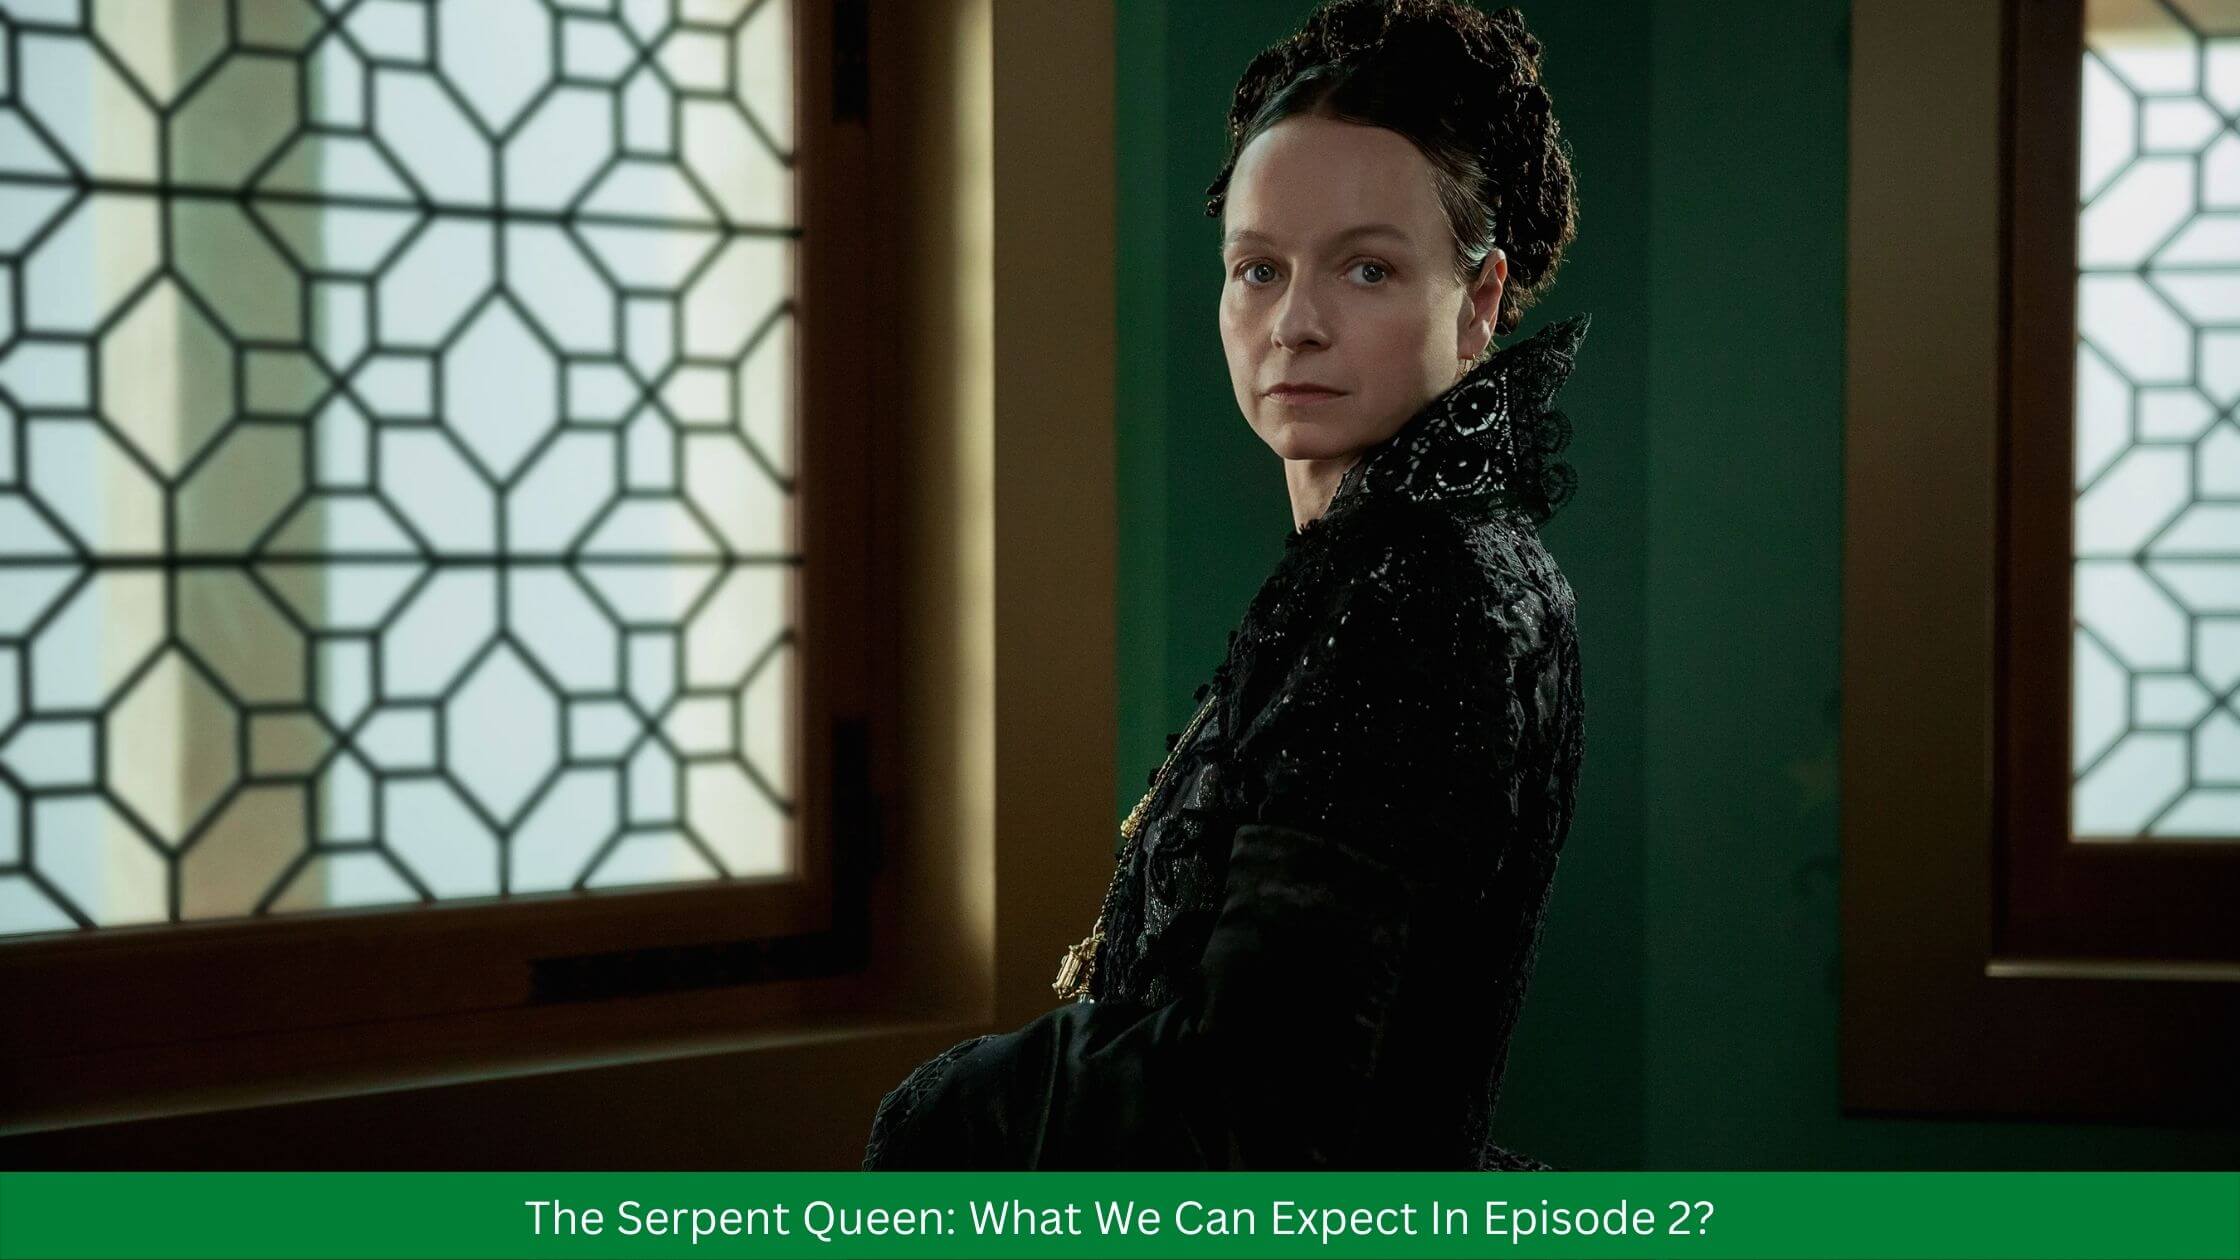 The Serpent Queen: Episode 2 Release Date Updates